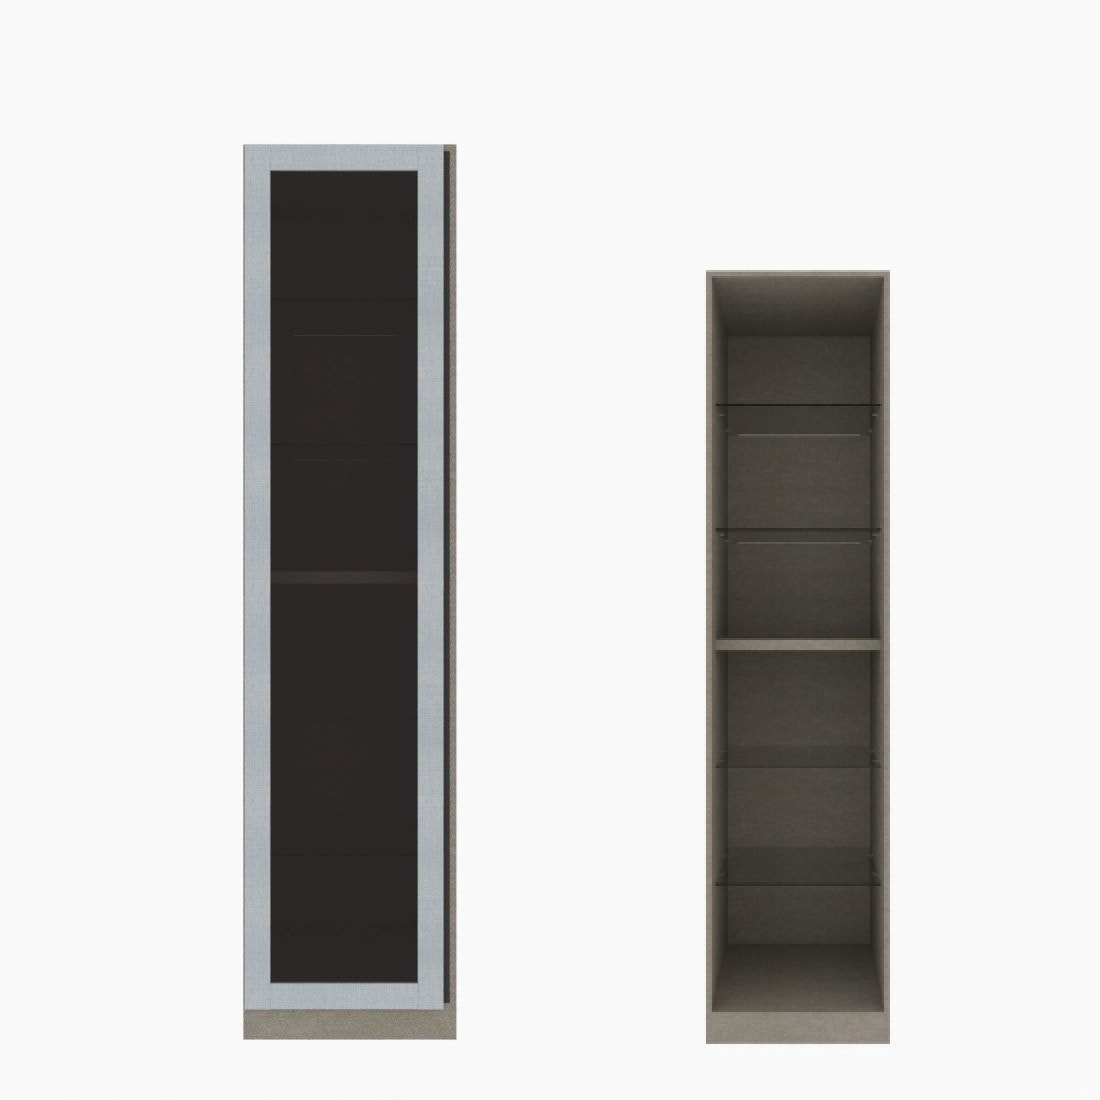 ตู้เสื้อผ้า ตู้โชว์ชั้นกระจก OP-H (หน้าบานเปิดซ้าย) ขนาด 50 ซม. รุ่น Blox สีขาวลายผ้า&กระจกชาดำ01